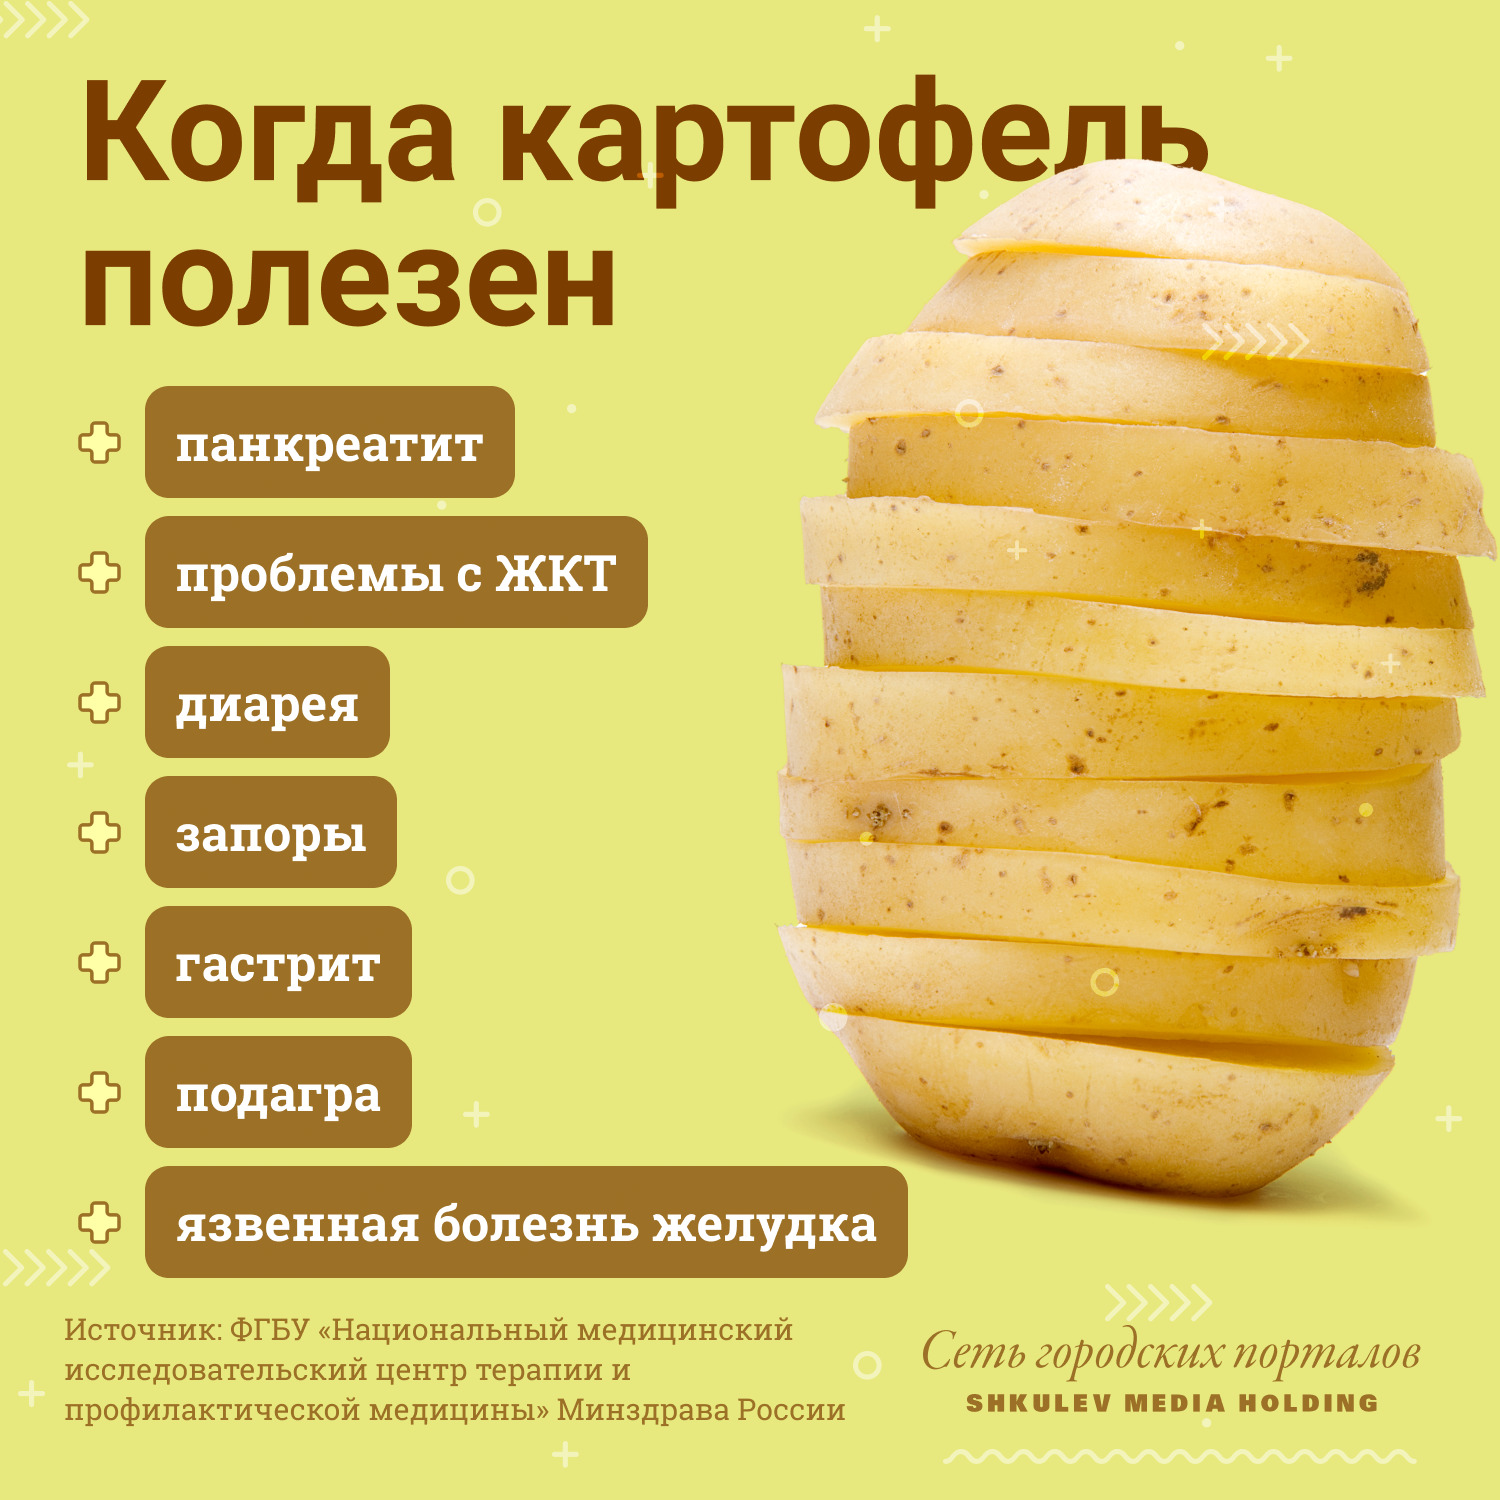 Полезных свойств у картофеля куда больше, чем вредных